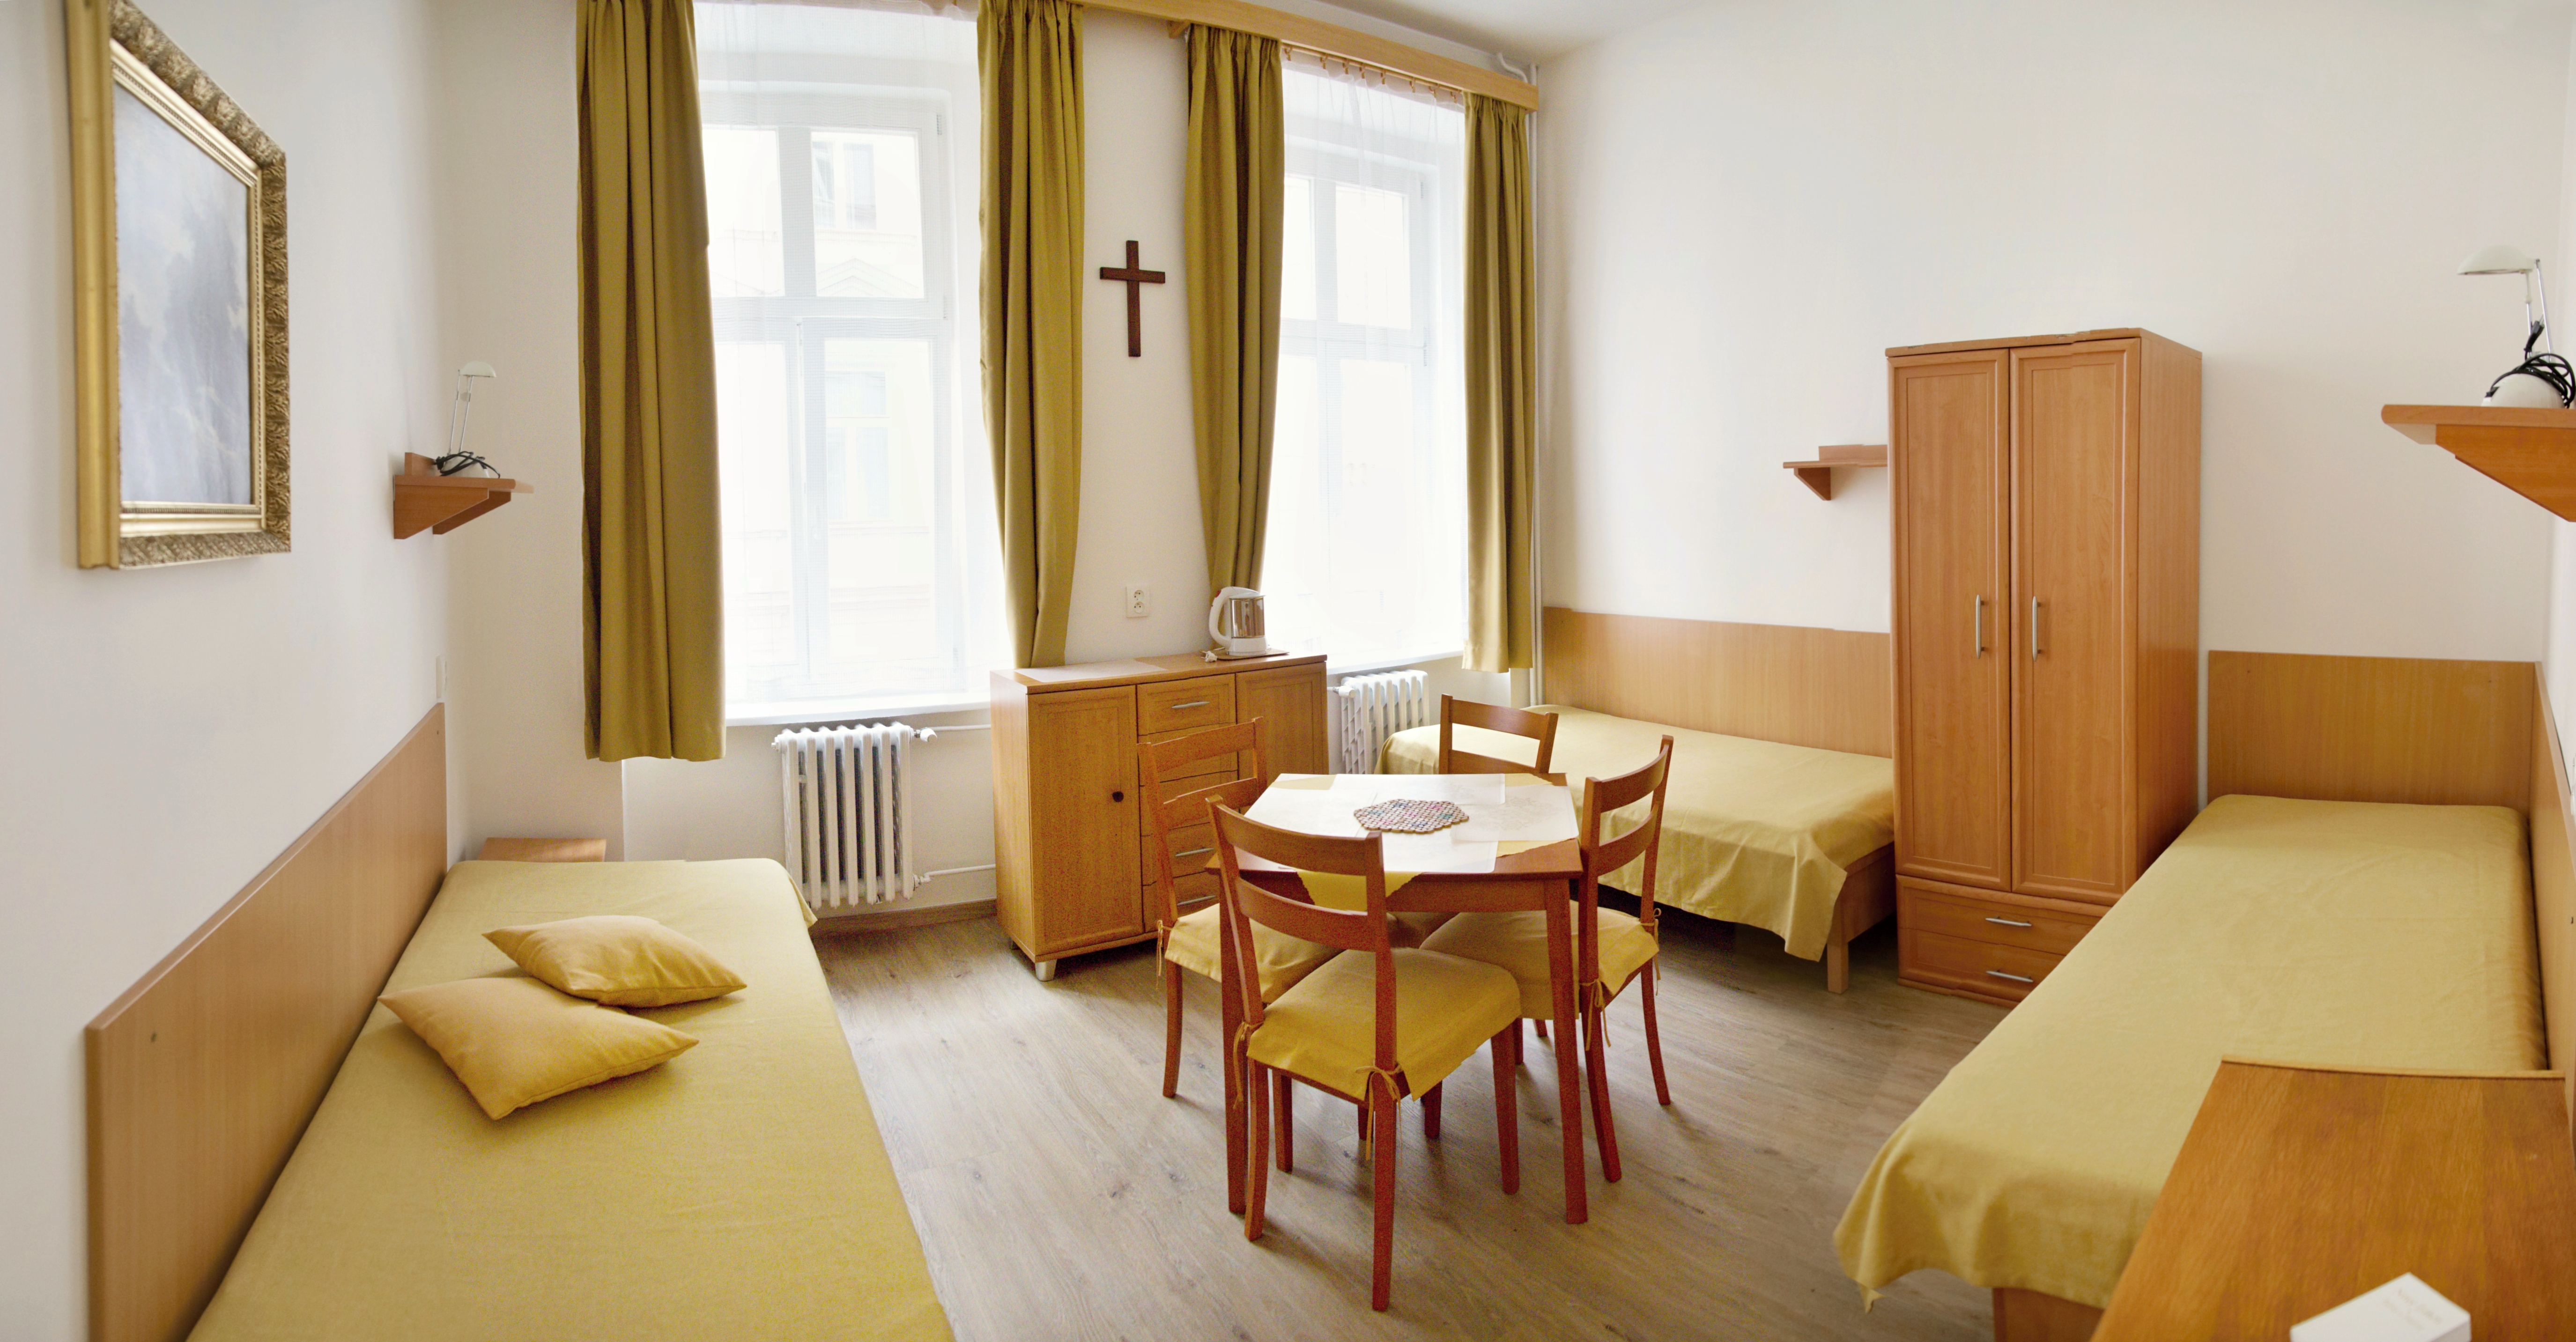 Praha 1 - Nové Město, Catholic Home of Students - Třílůžkový pokoj během školního roku